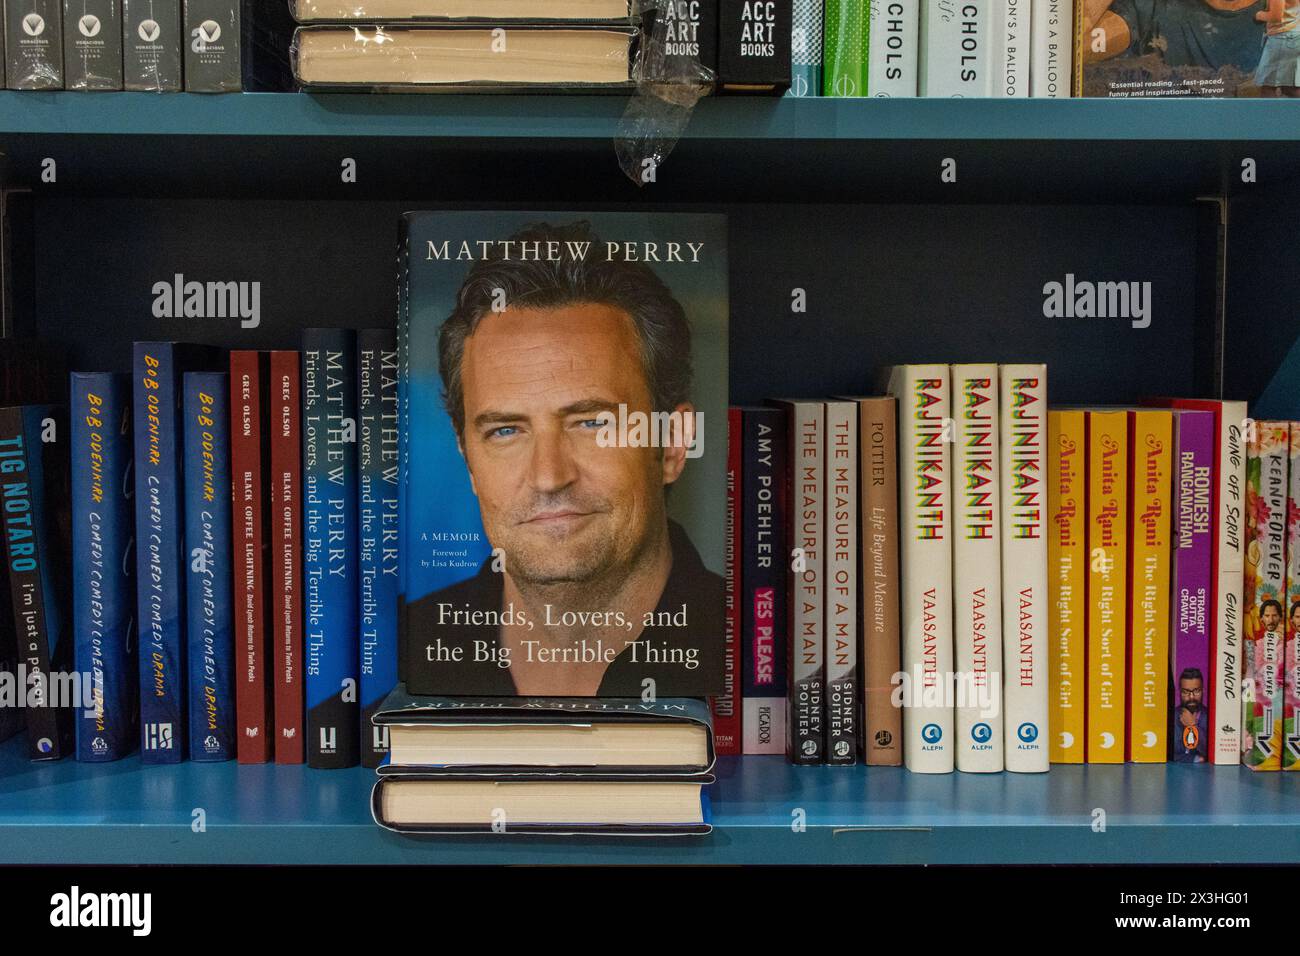 Gros plan les amis de Matthew Perry, les amoureux, et le livre Big terrible Thing sur une étagère dans la librairie. Banque D'Images